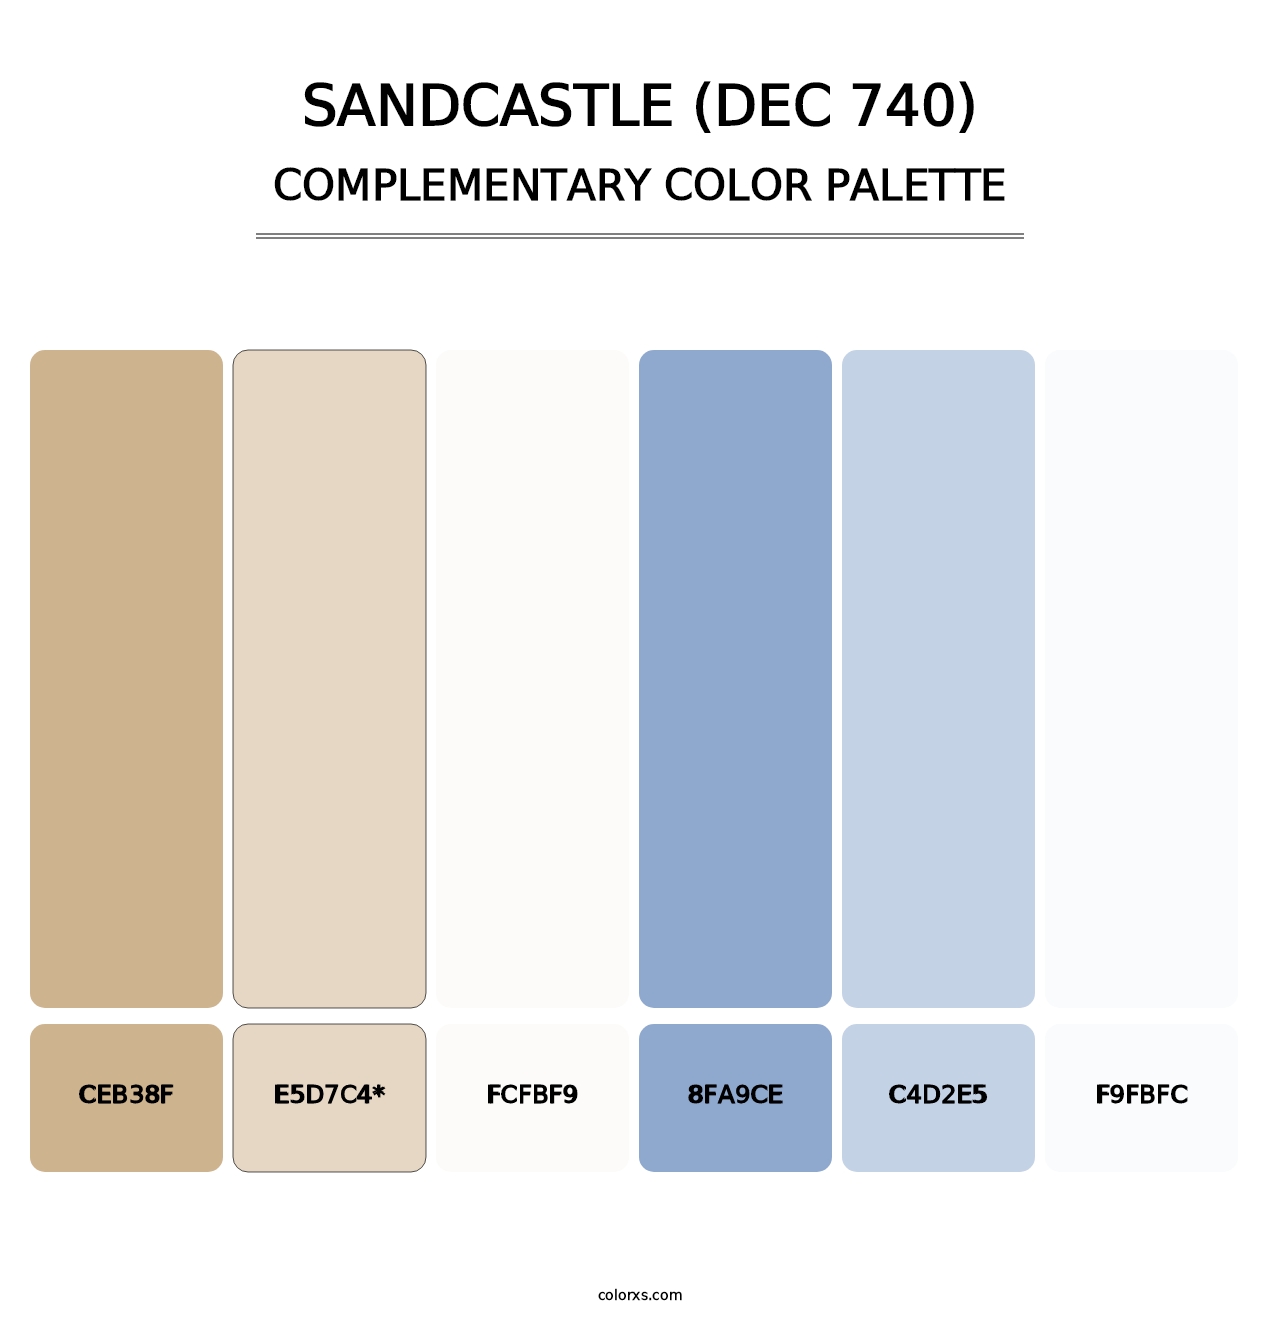 Sandcastle (DEC 740) - Complementary Color Palette